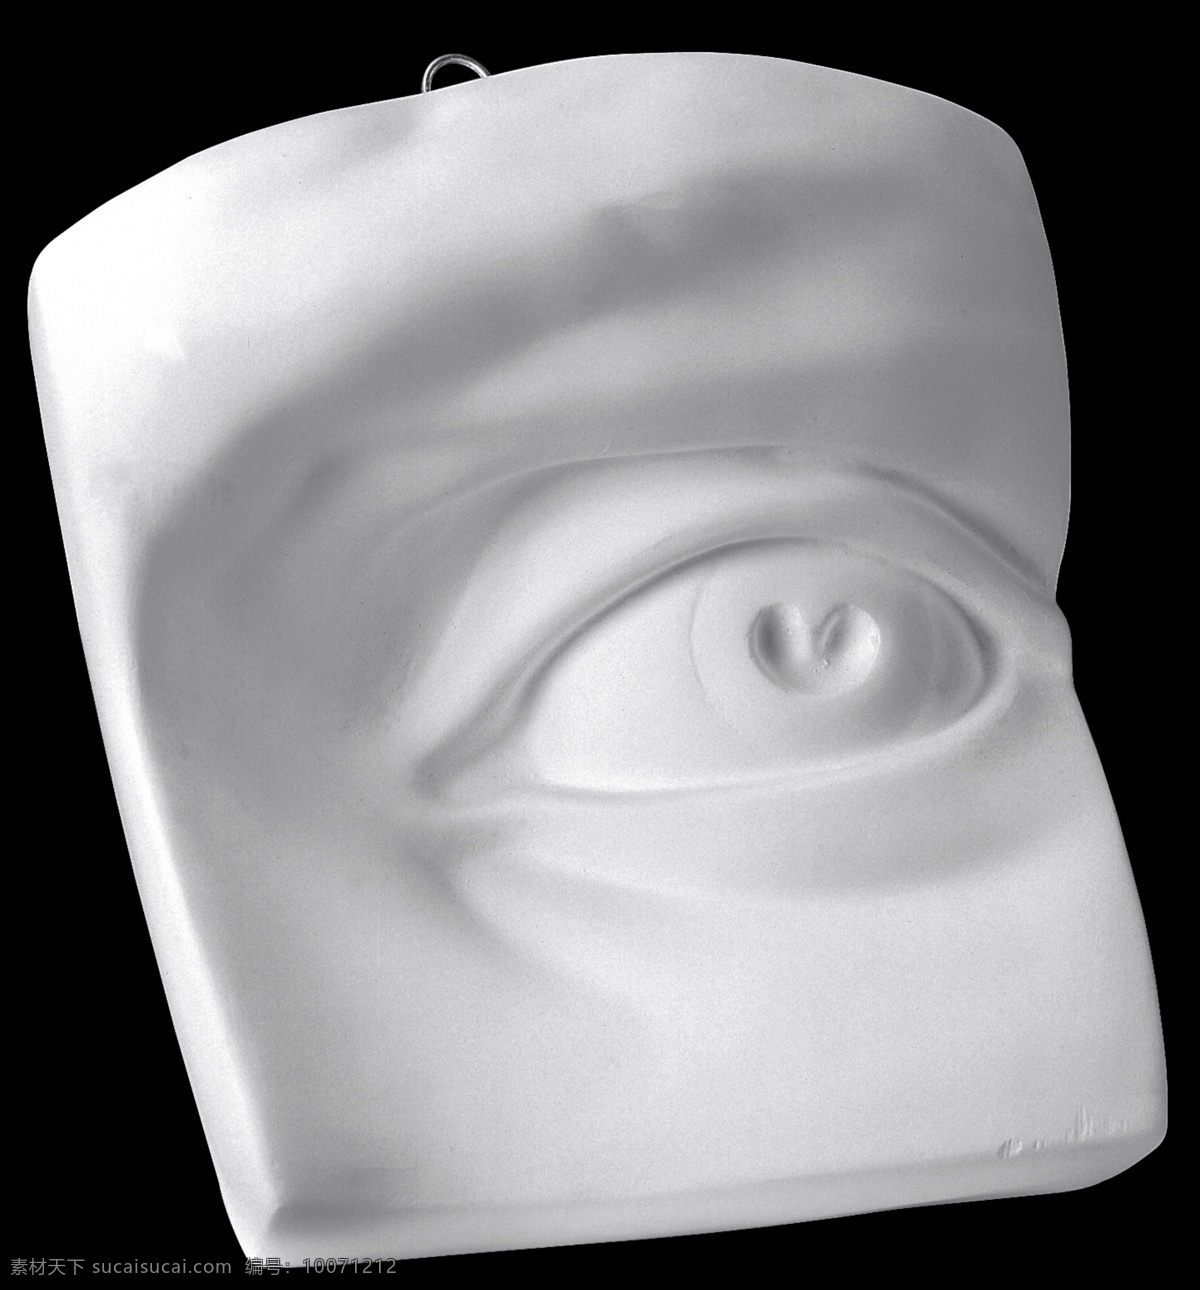 石膏像 美术绘画 模具 形状 眼 人模具 文化艺术